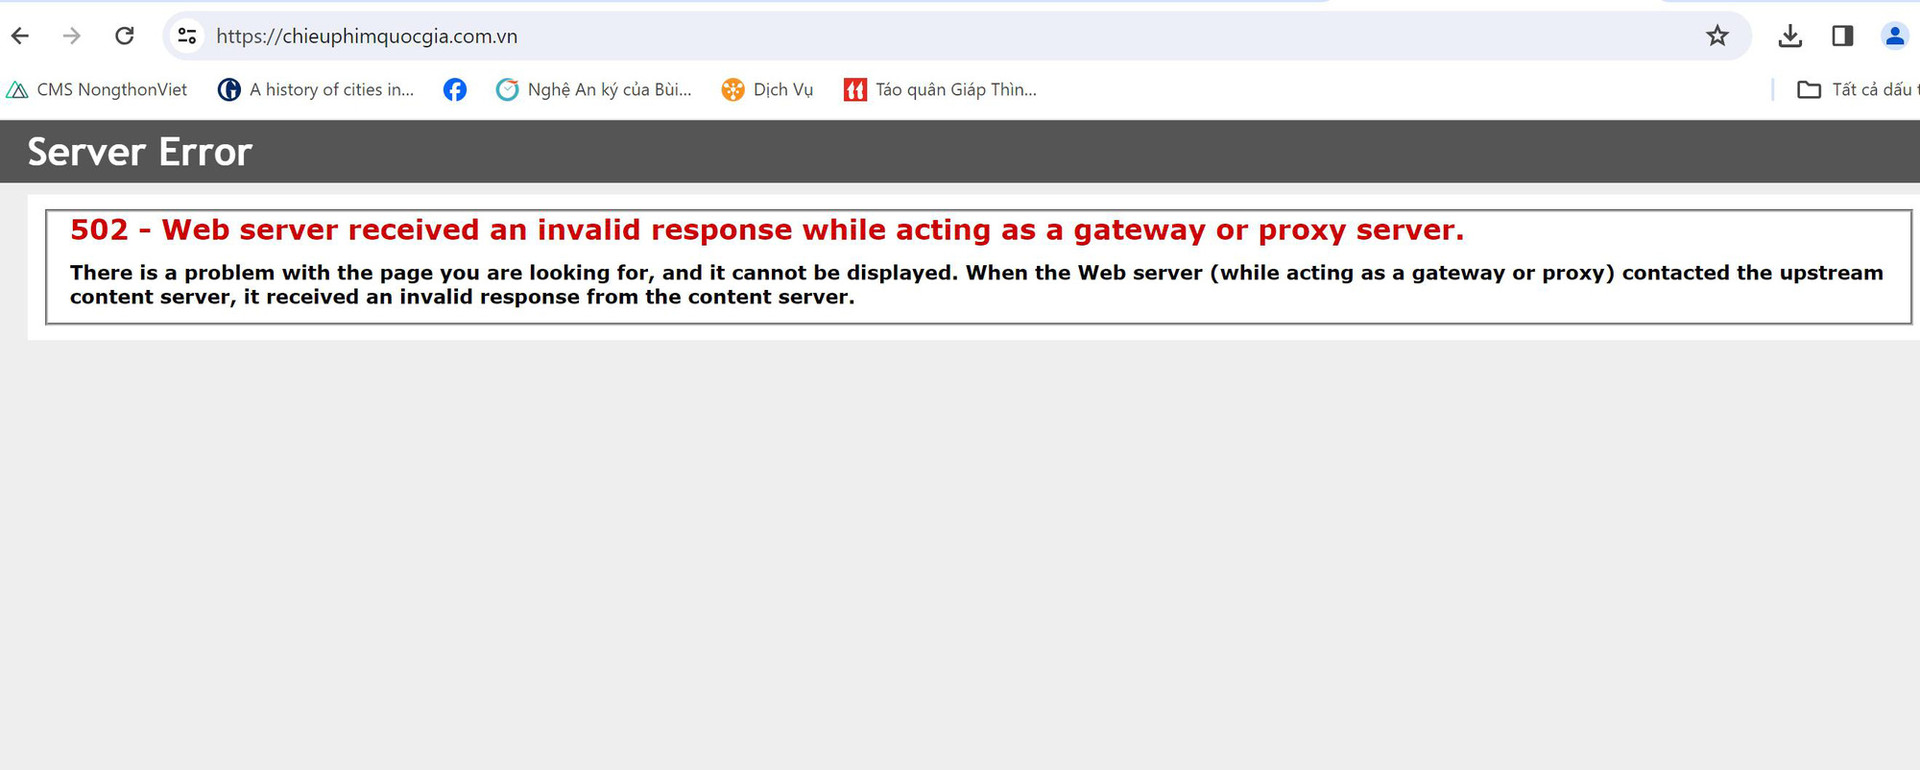 Tới trưa 18-2, trang web Trung tâm Chiếu phim quốc gia vẫn chưa hoạt động trở lại - Ảnh chụp màn hình